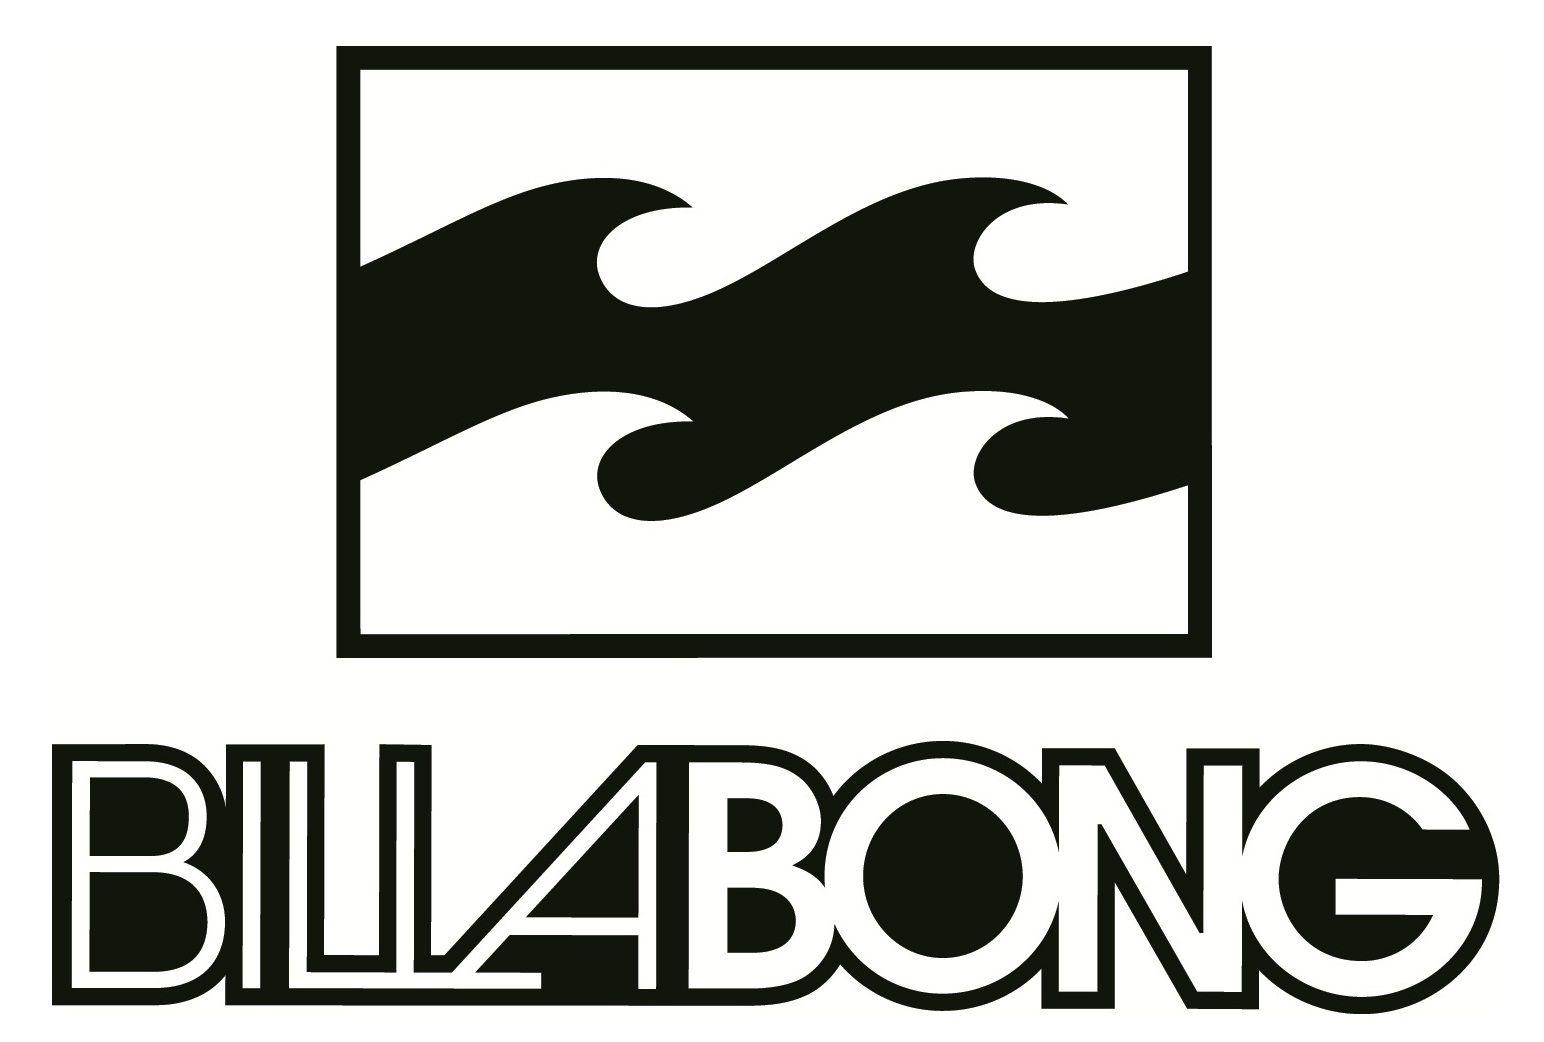 Billabong - Billabong Wallpaper (2281901) - Fanpop